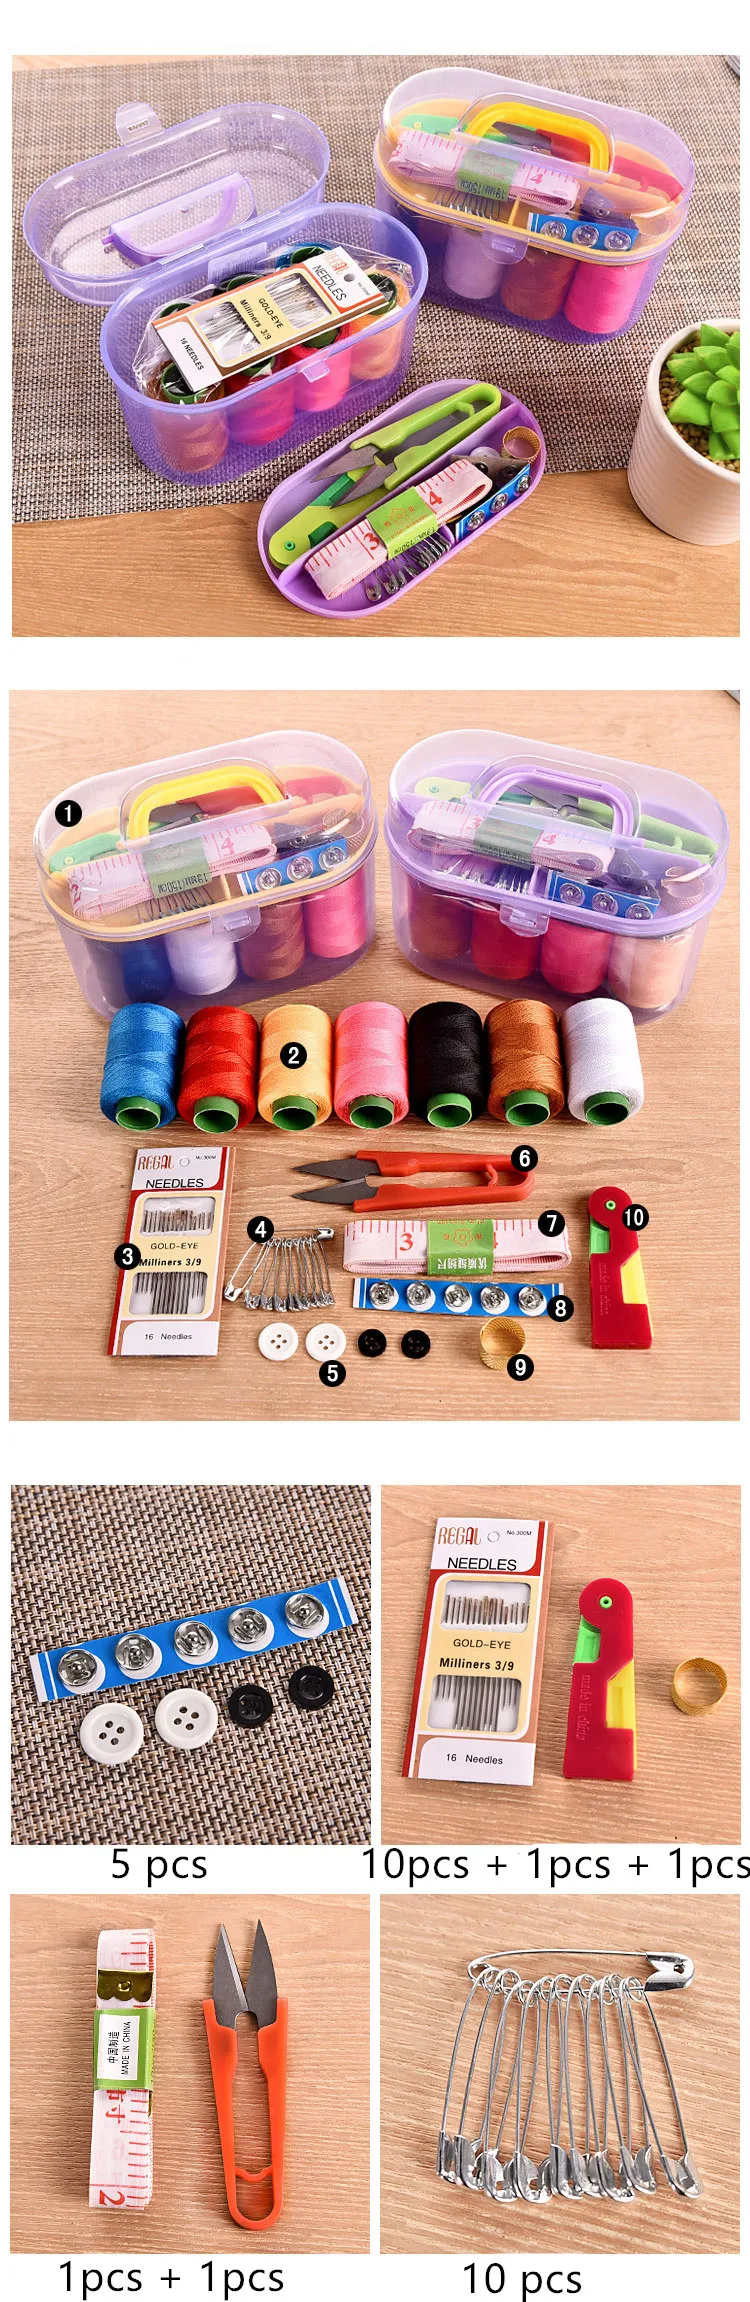 Домашний швейный набор швейная коробка Швейные аксессуары спицы инструменты для шитья эллиптический балбокс игла и коробка с нитками